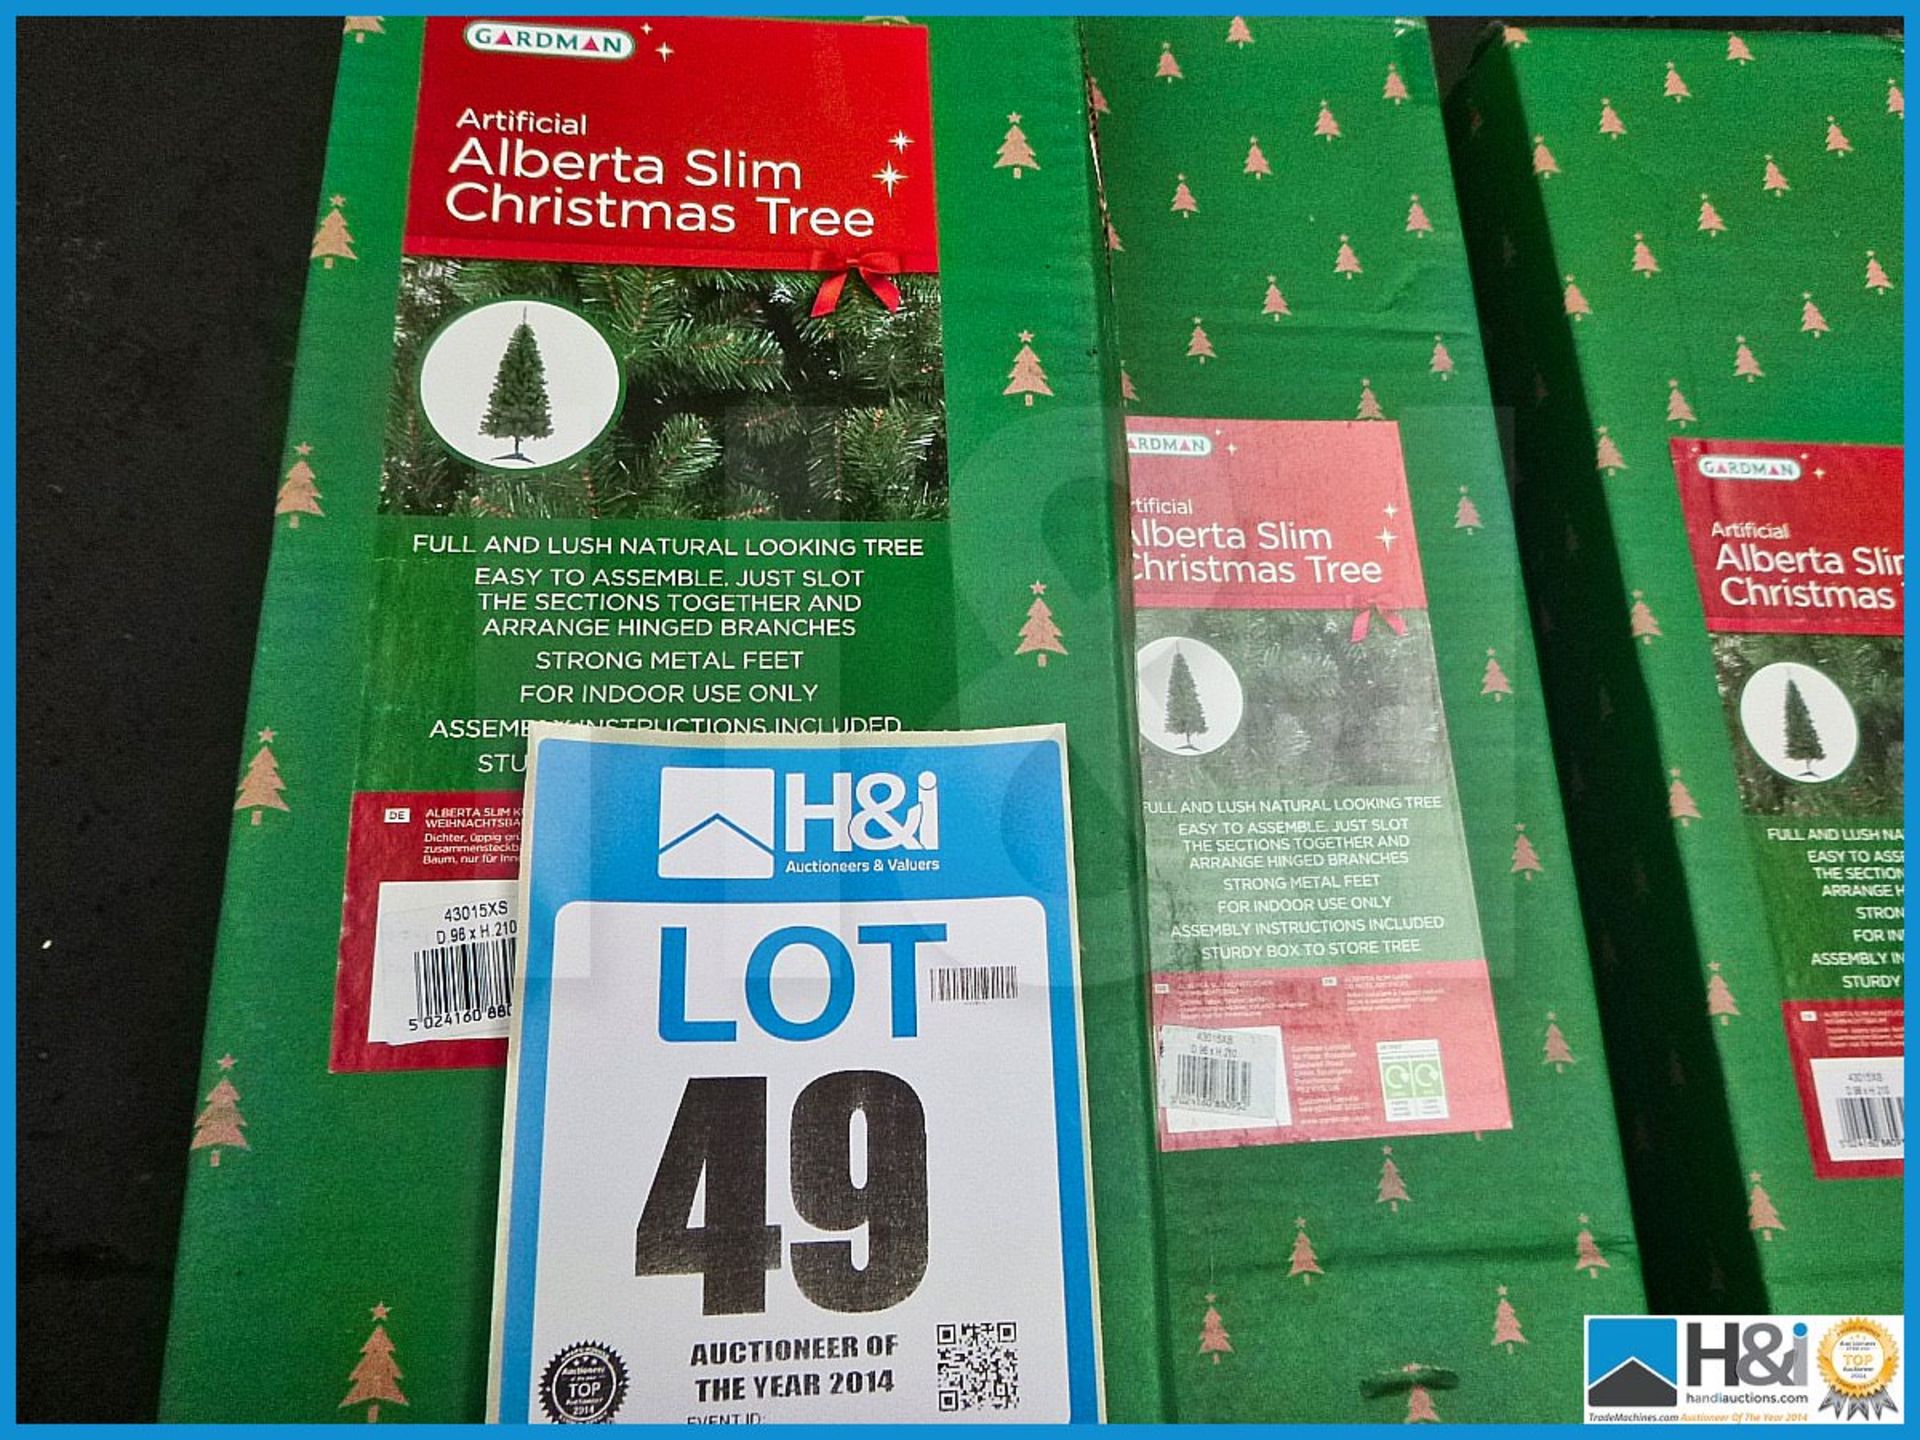 GARDMAN ARTIFICIAL 7' ALBERTA SLIM CHRISTMAS TREE, 43015XS, RRP £85.99, FULL AND LUSH NATURAL LOOKIN